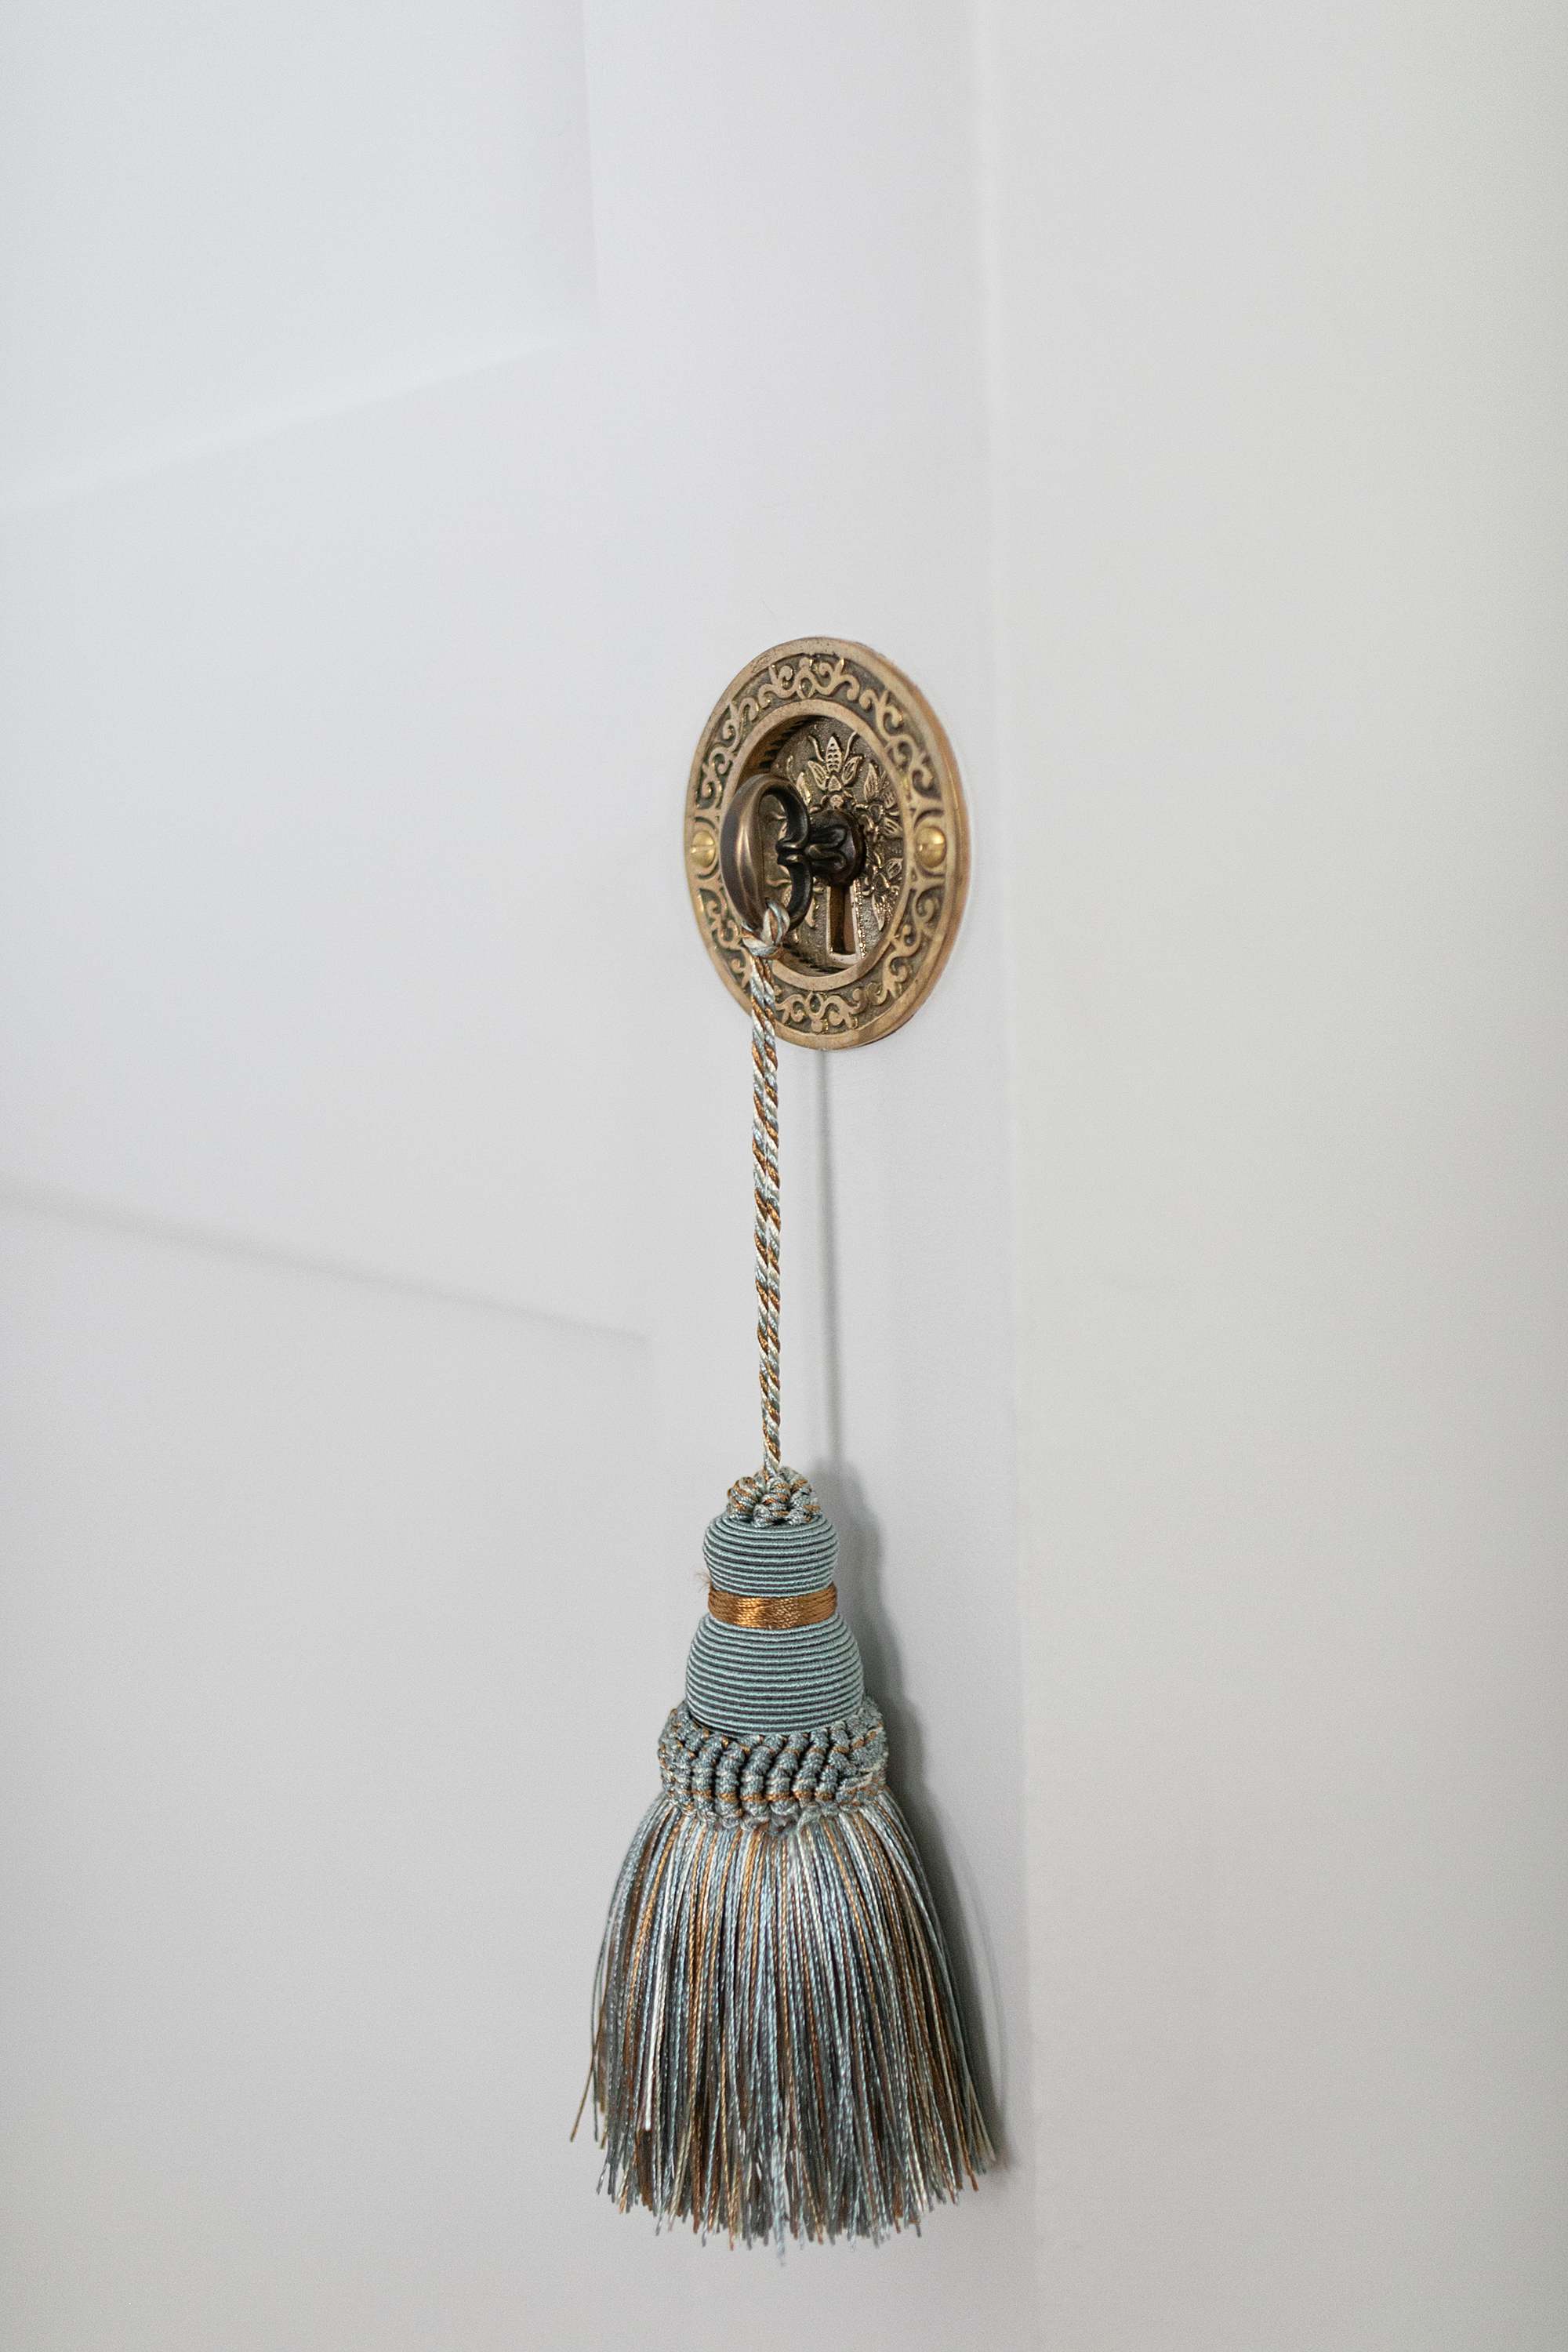 tassel on faux key harmon hinge door detail knob